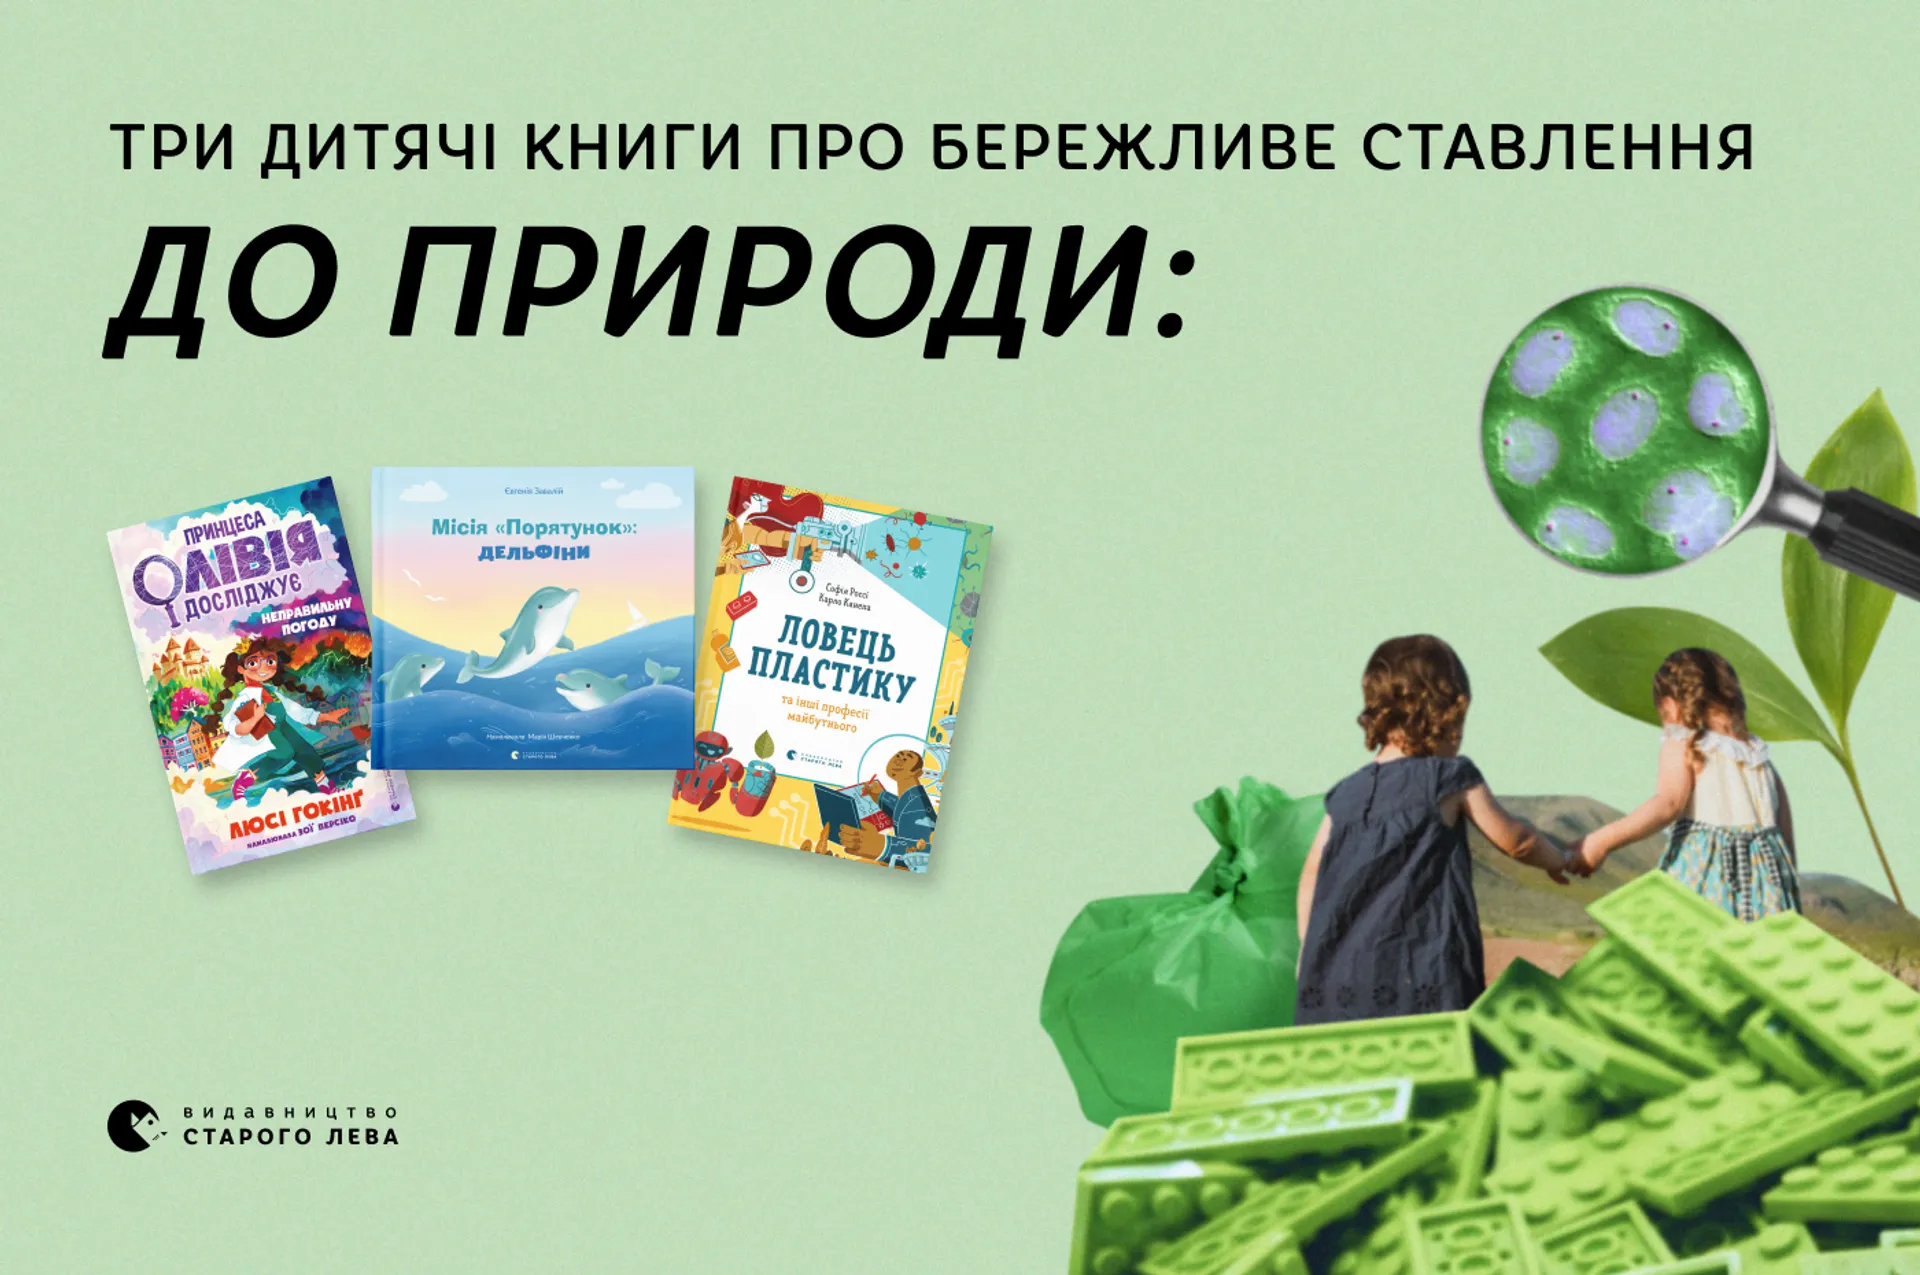 Три дитячі книги про бережливе ставлення до природи